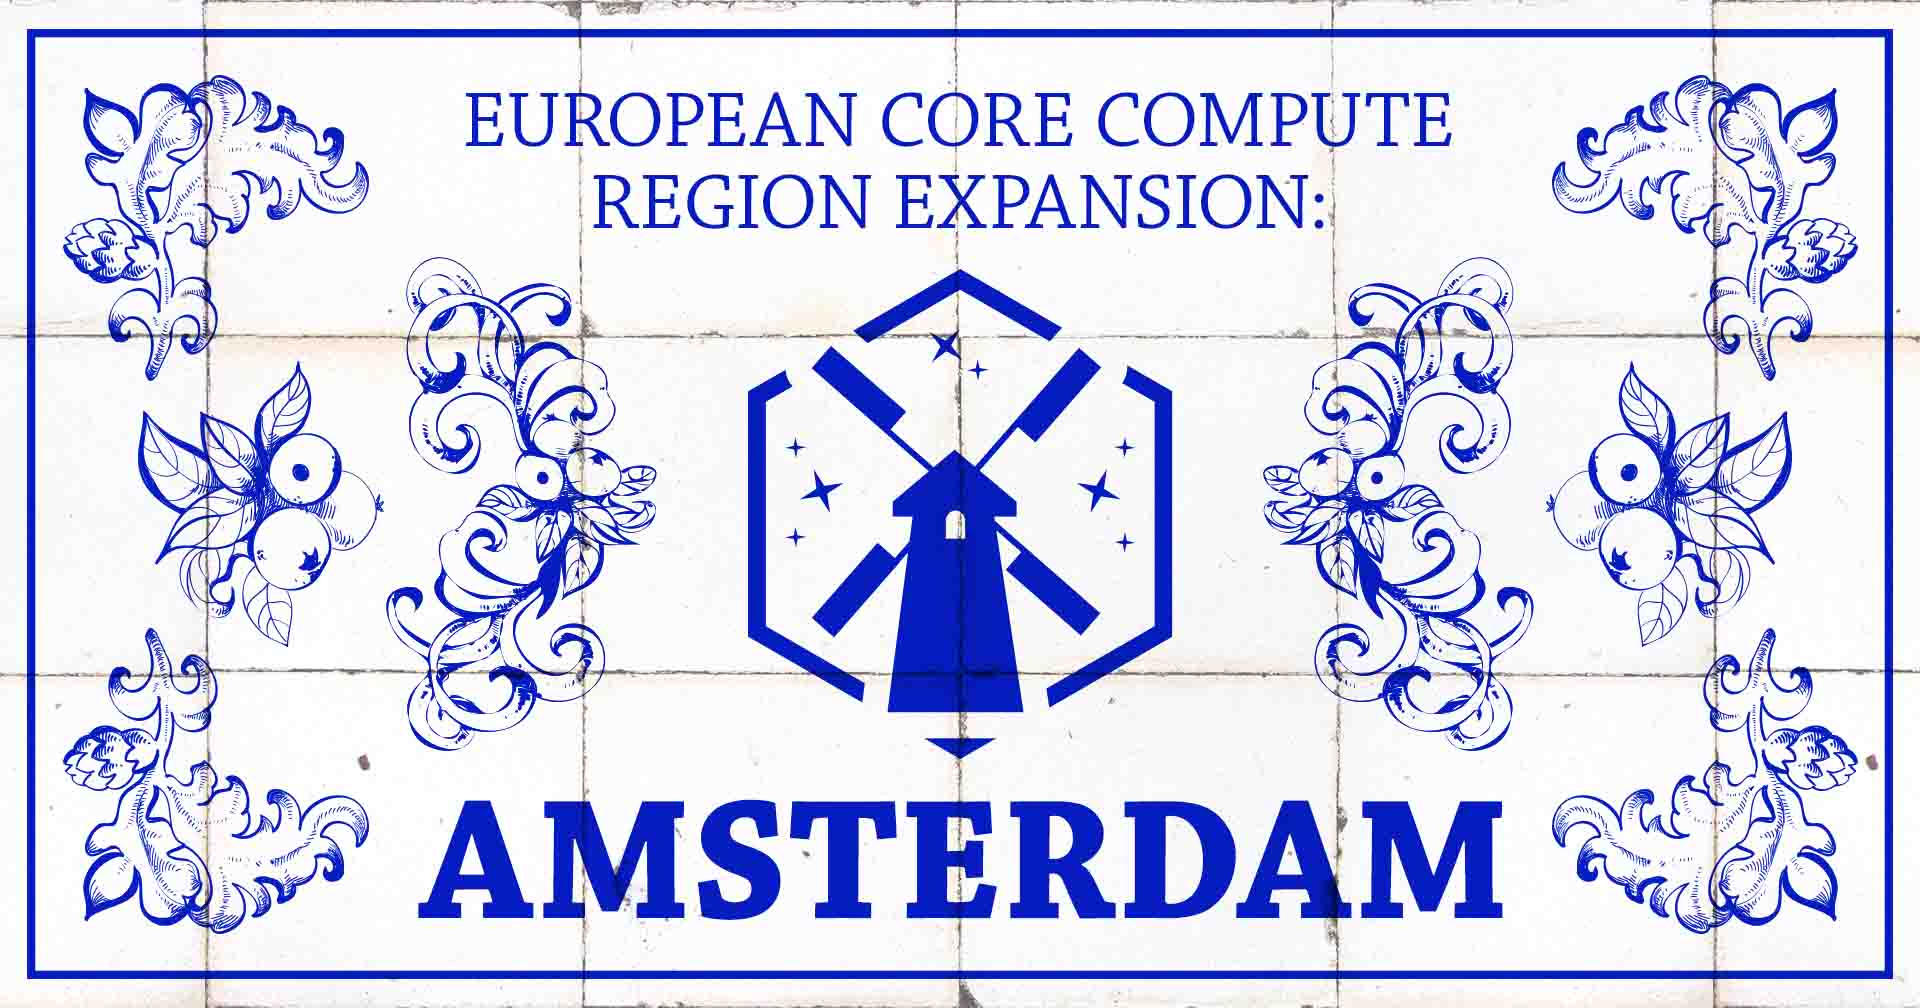 Immagine in evidenza per l'espansione della regione europea dal vivo ad Amsterdam.